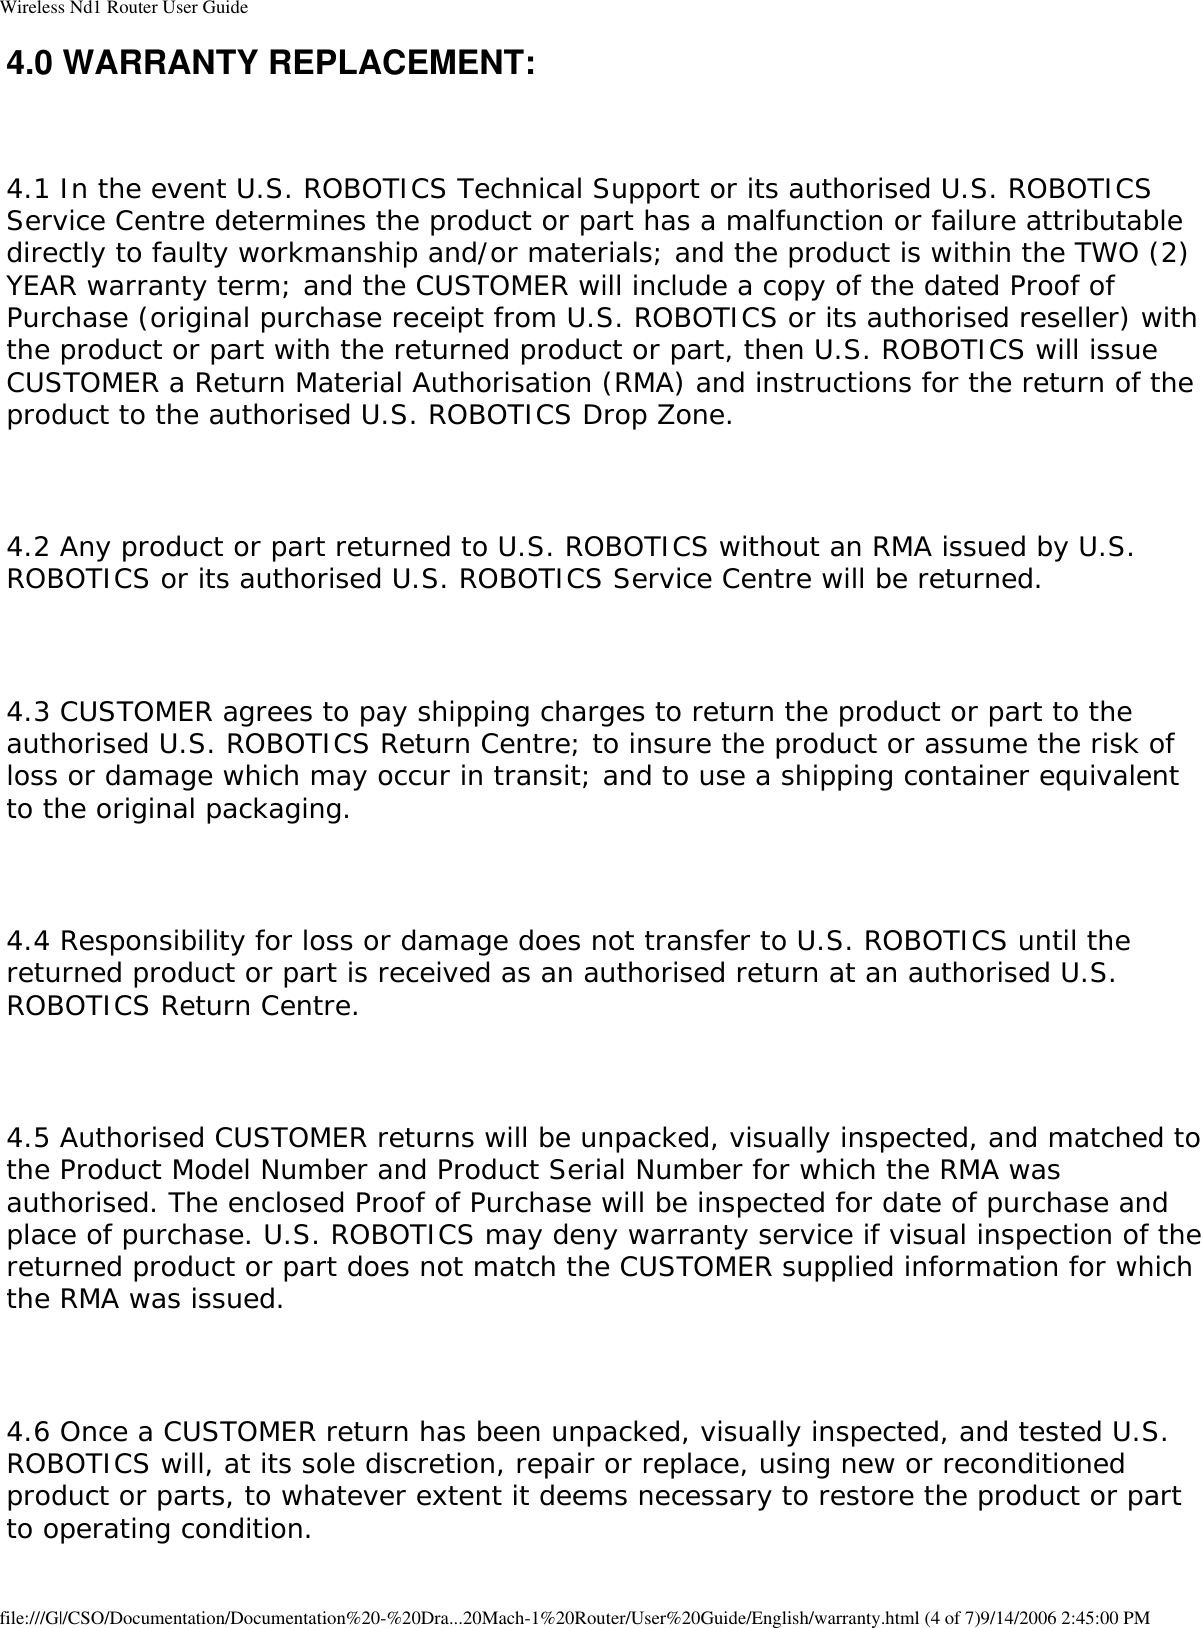 Page 60 of GemTek Technology R950630GN USRobotics Wireless Nd1 Router User Manual Wireless Nd1 Router User Guide